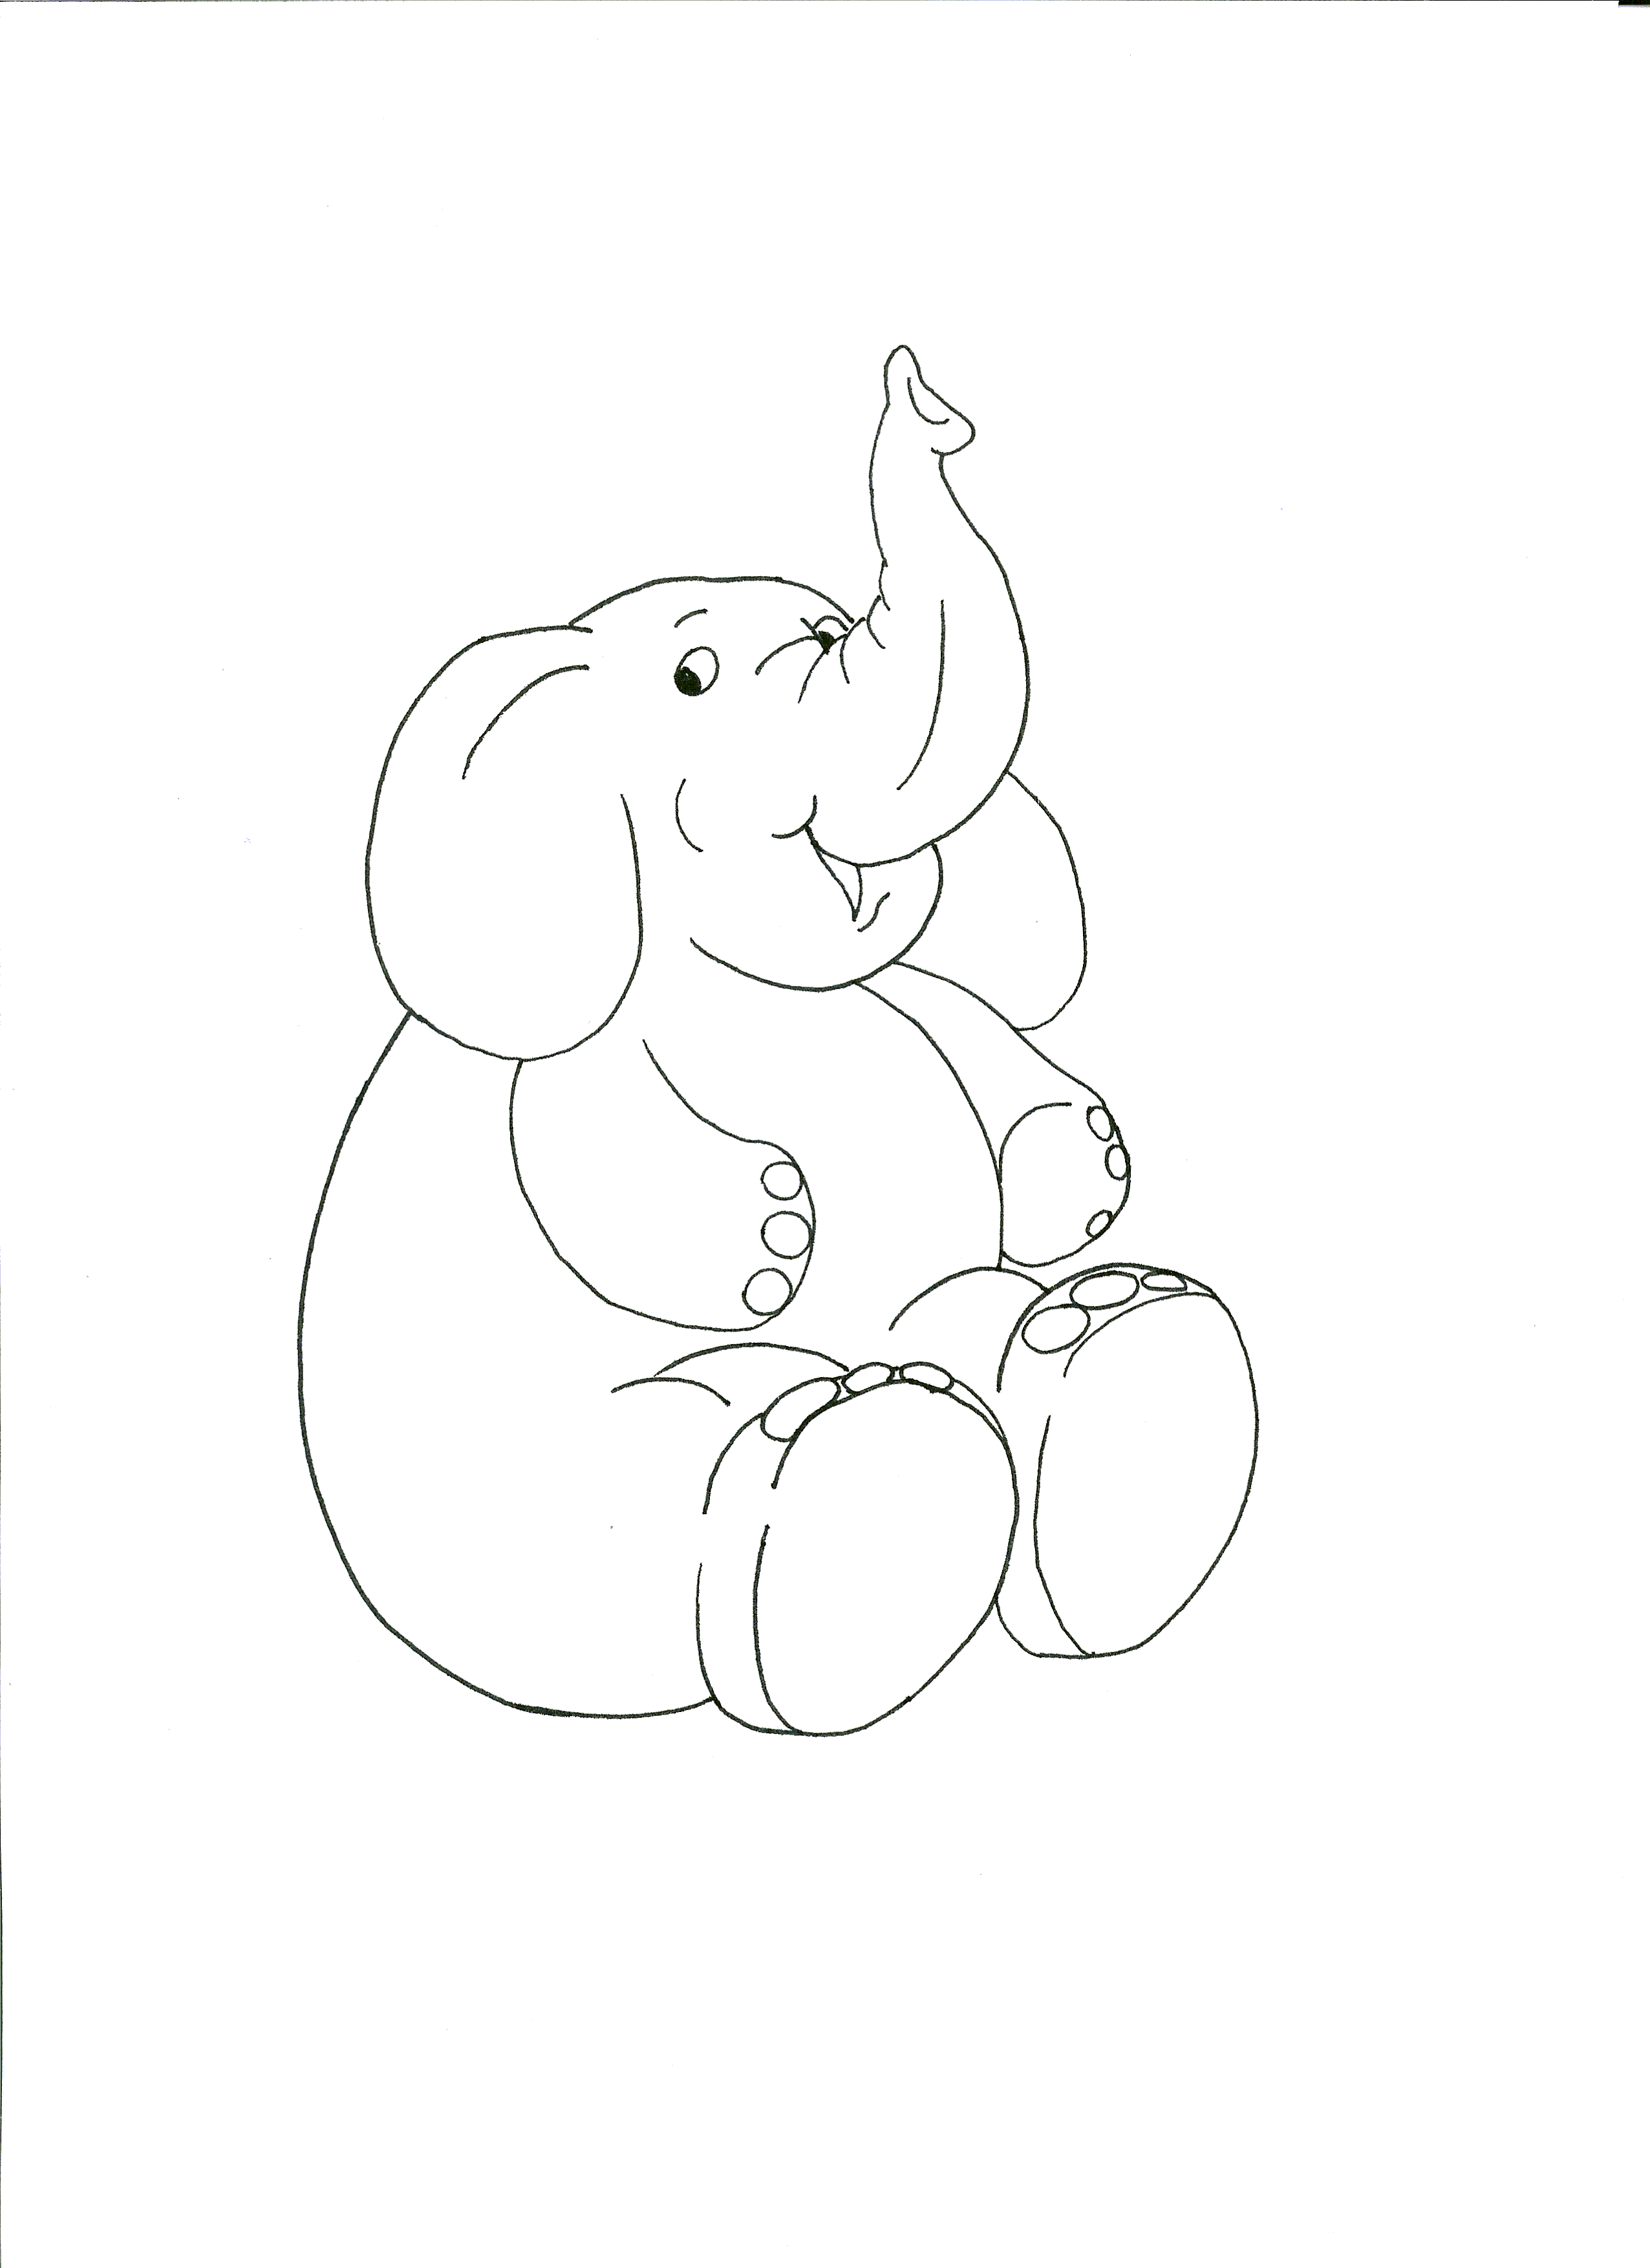 Grande elefante seduto disegno da stampare